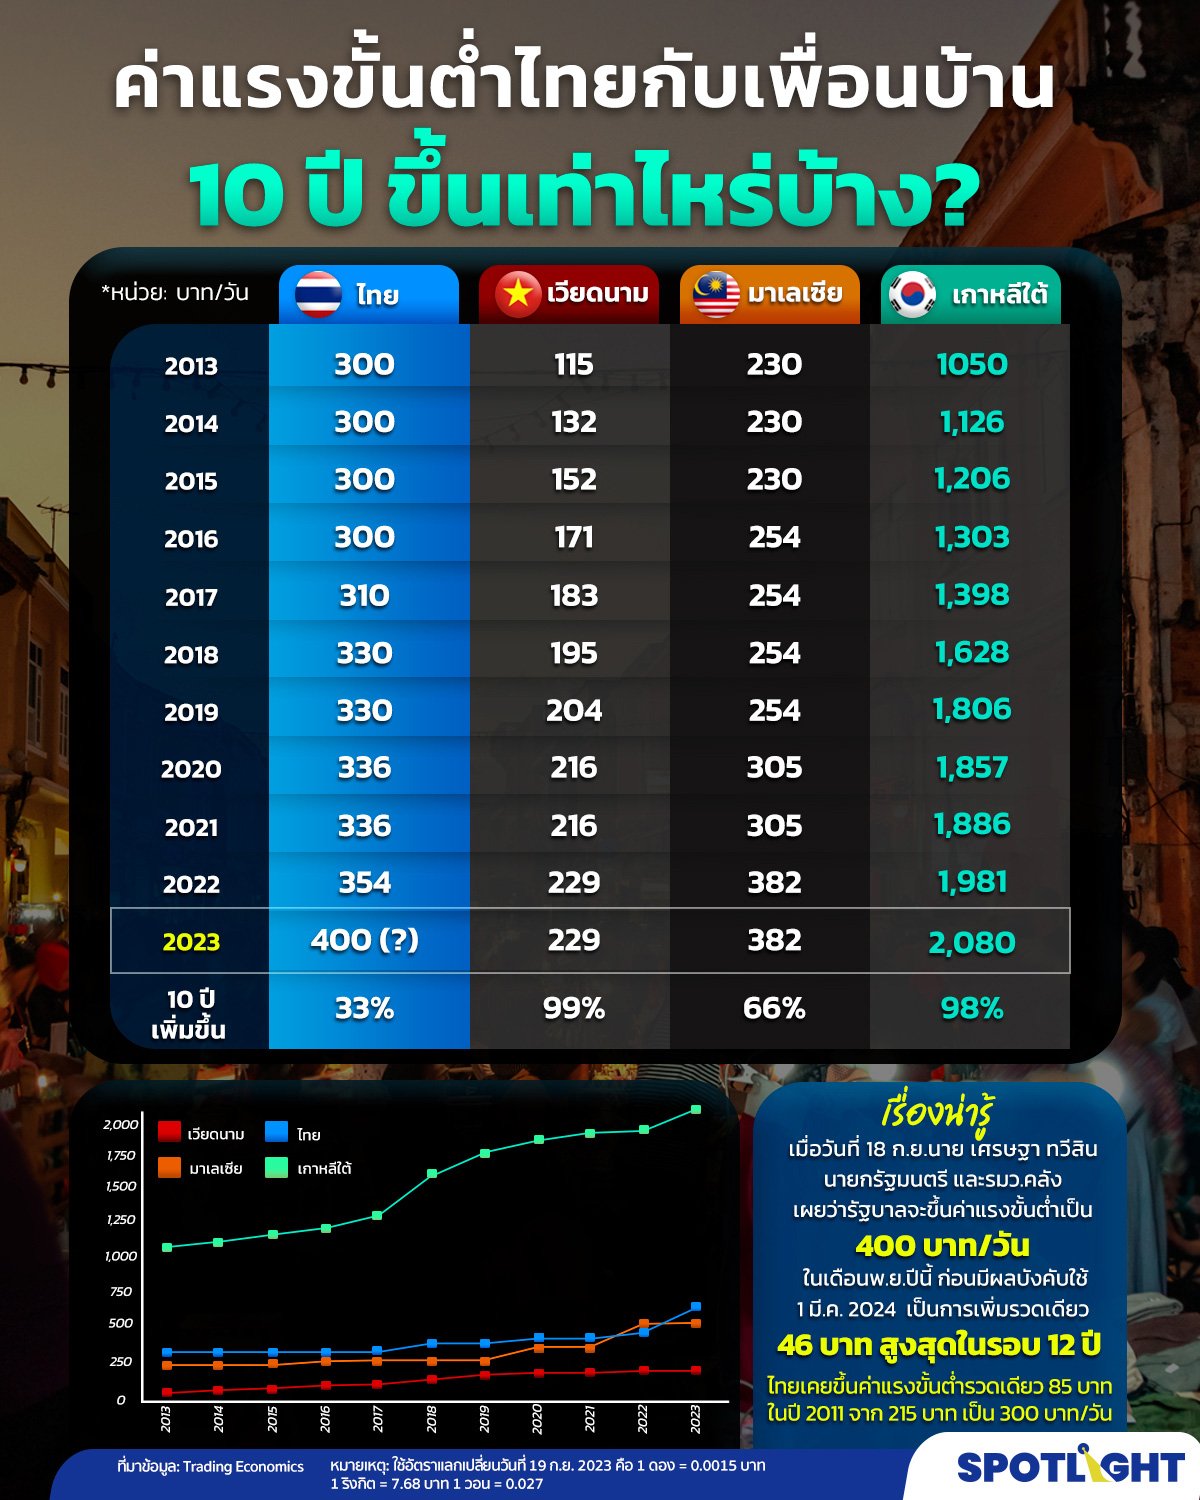 ค่าแรงขั้นต่ำไทยเทียบเพื่อนบ้าน